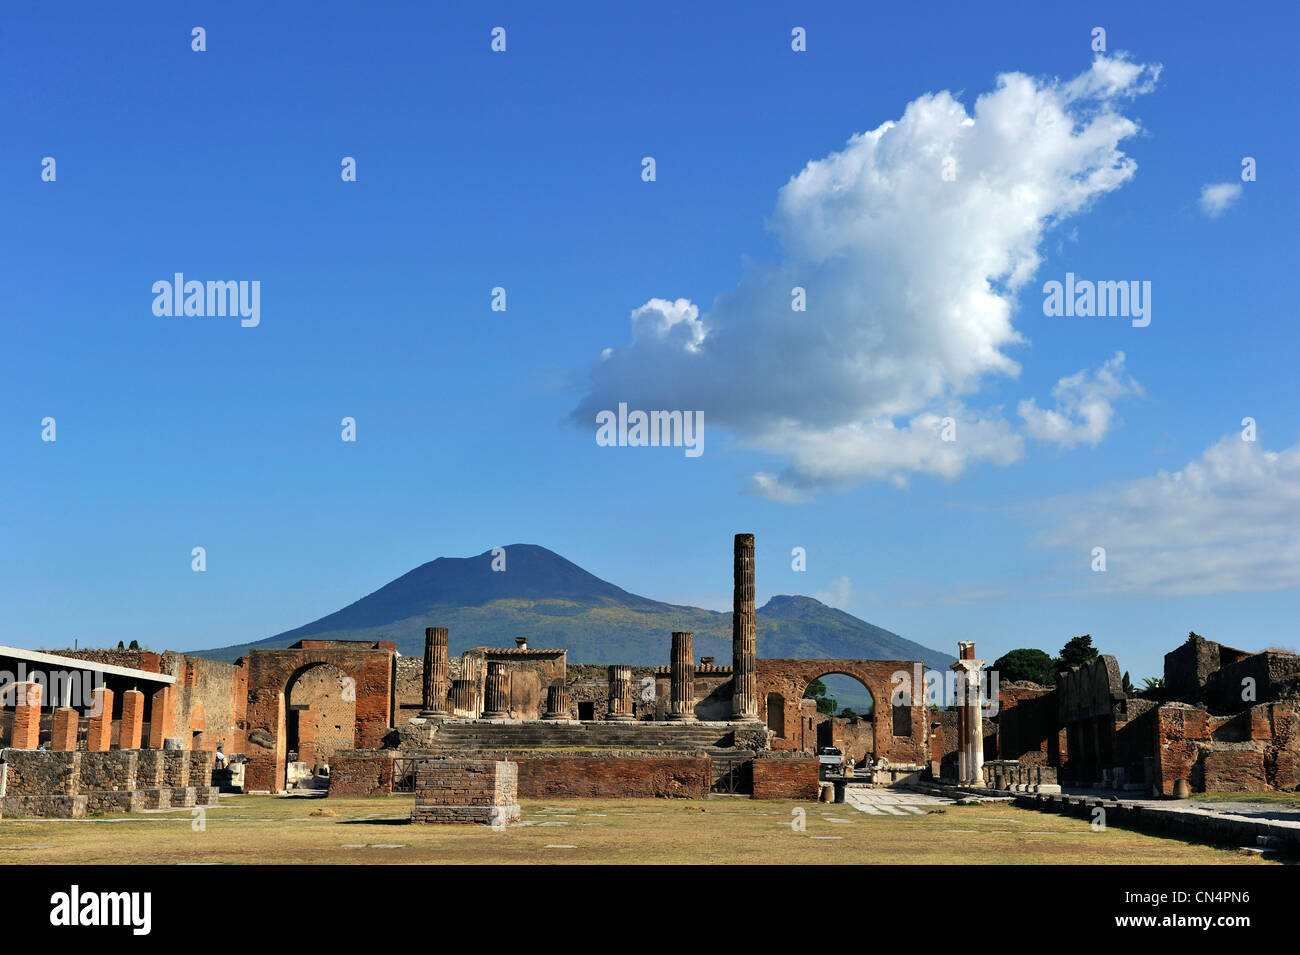 Italia, Campania, Pompei, sitio arqueológico catalogado como Patrimonio Mundial por la UNESCO, el foro, el templo de Júpiter con el Vesubio Foto de stock